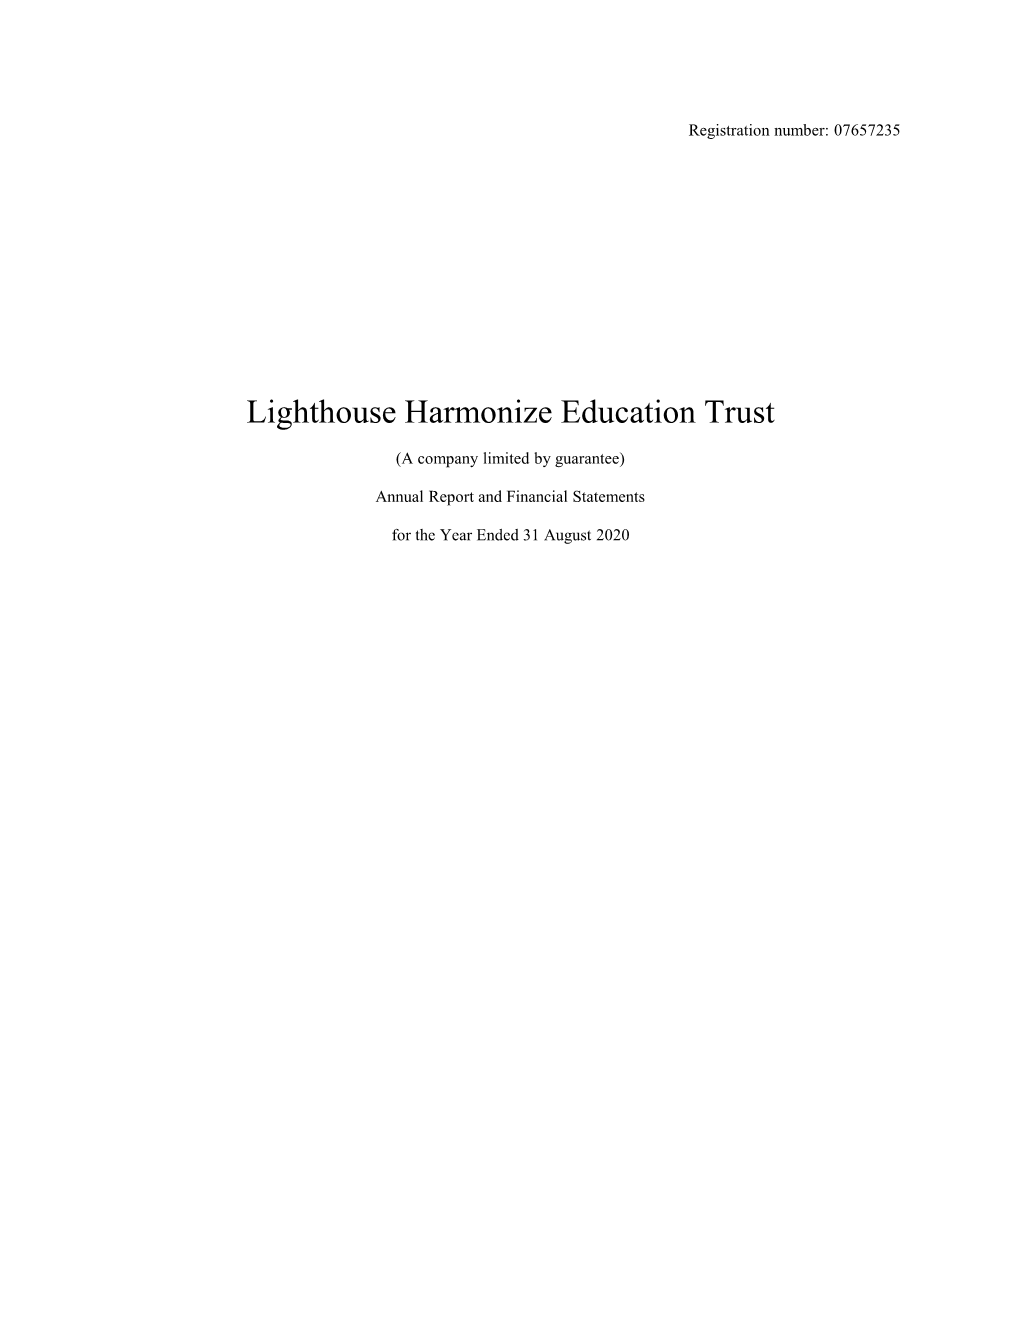 Lighthouse Harmonize Education Trust Signed Accounts 2020